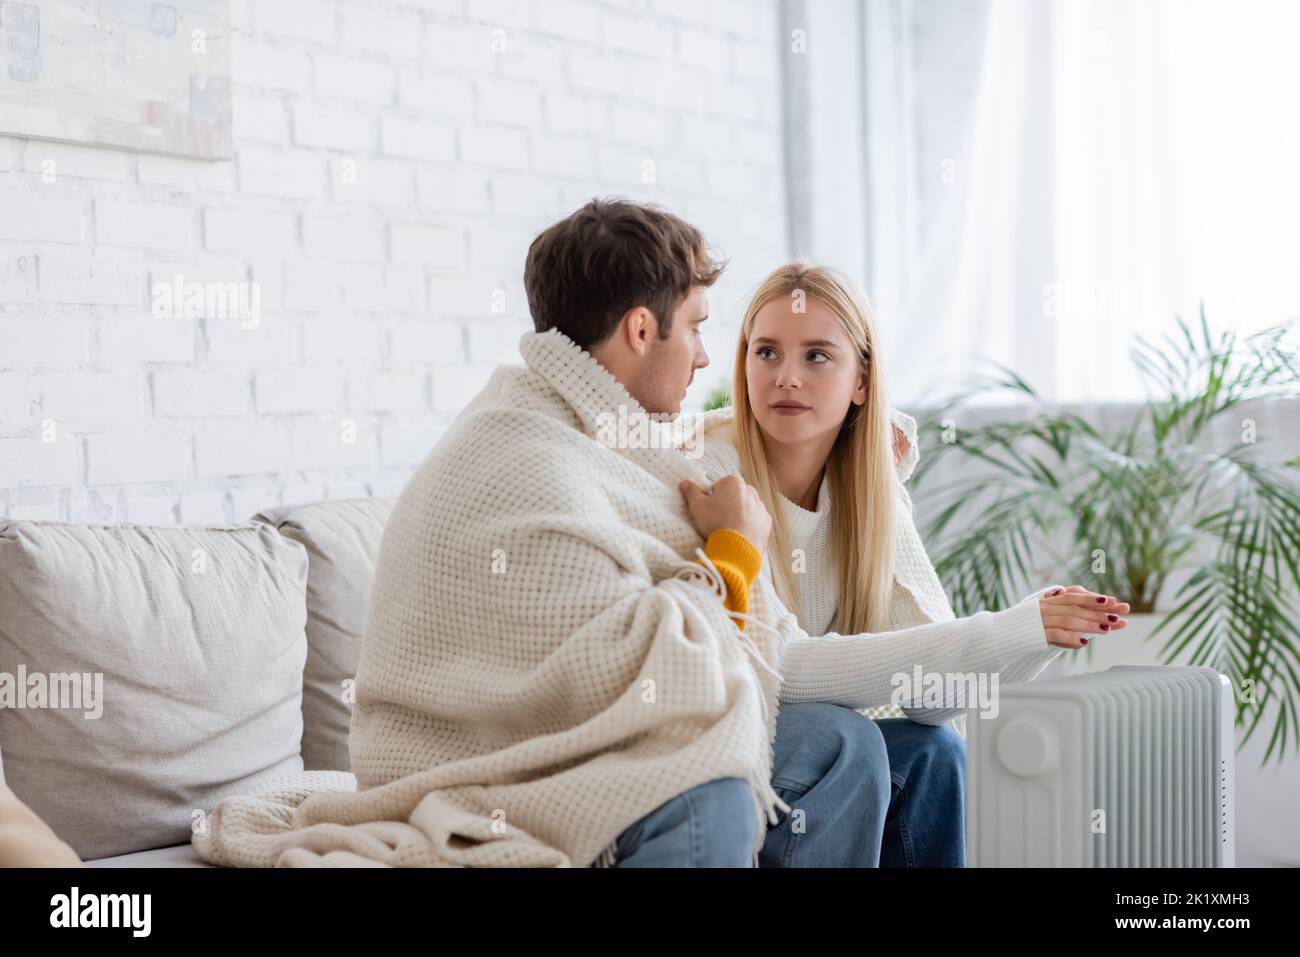 Junges Paar mit Decke bedeckt, sitzt auf der Couch und wärmt sich in der Nähe des Heizkörpers zu Hause, Stockbild Stockfoto